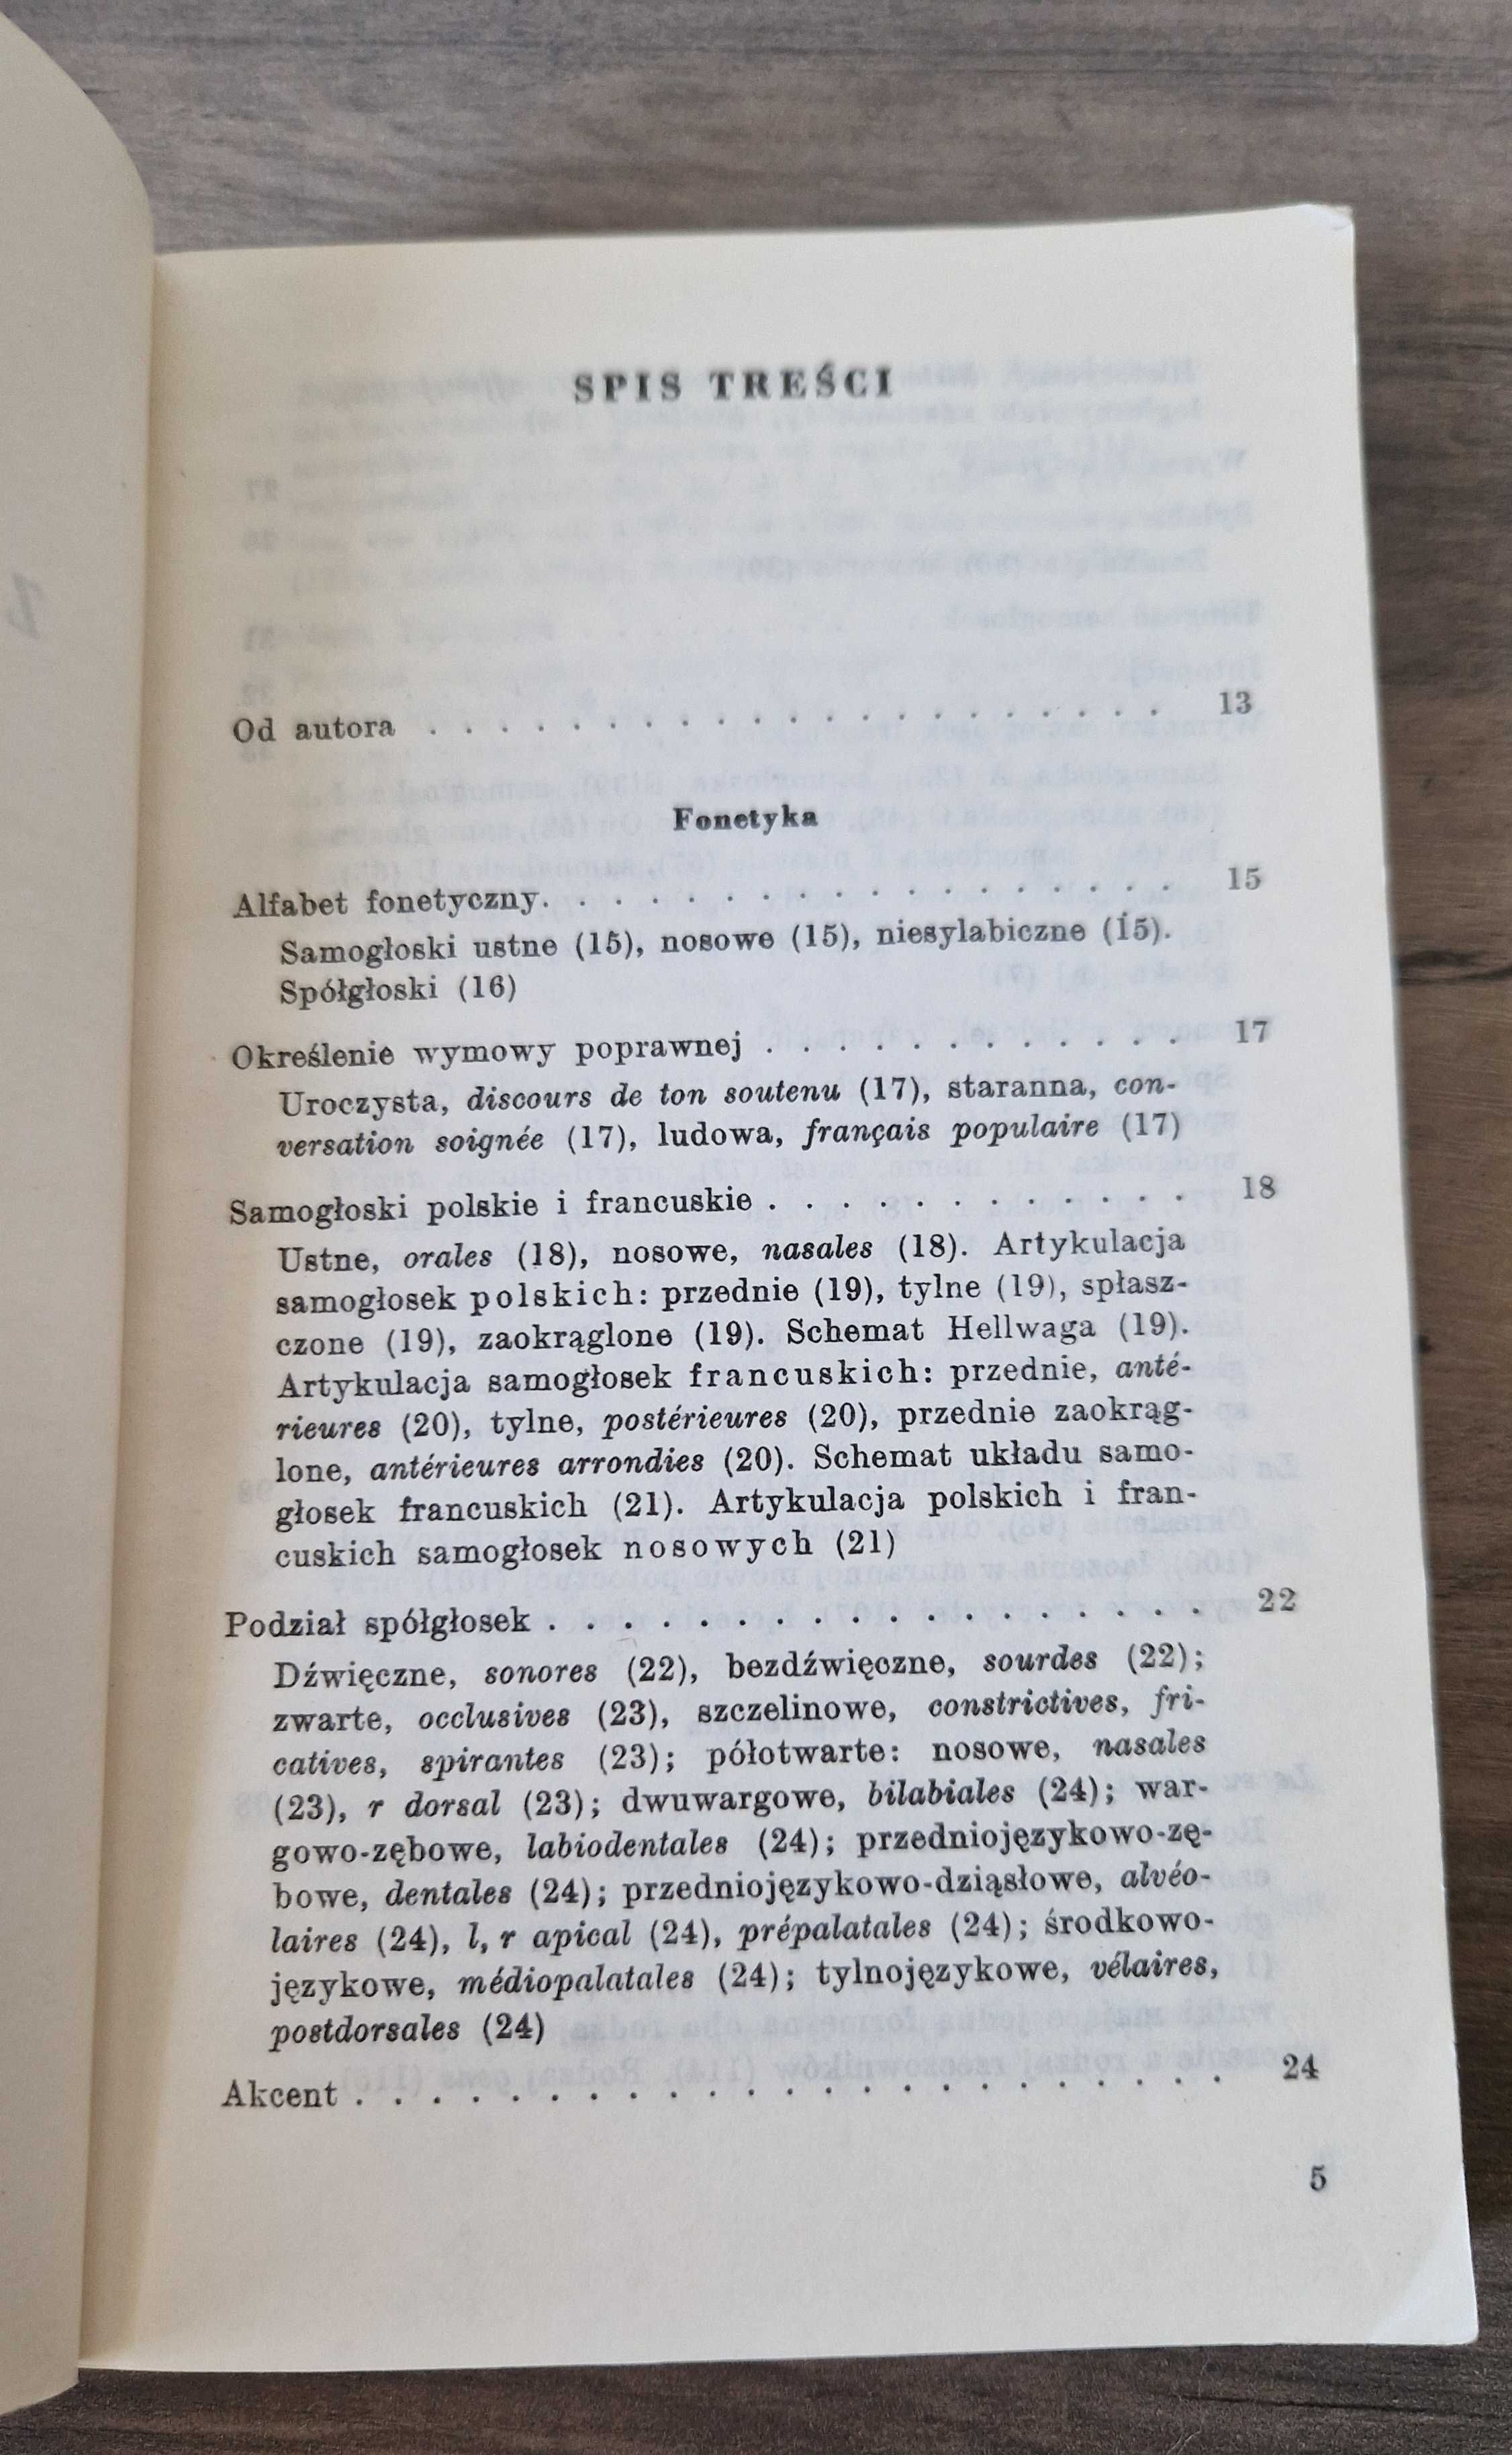 Zarys gramatyki francuskiej Henryk Łebek